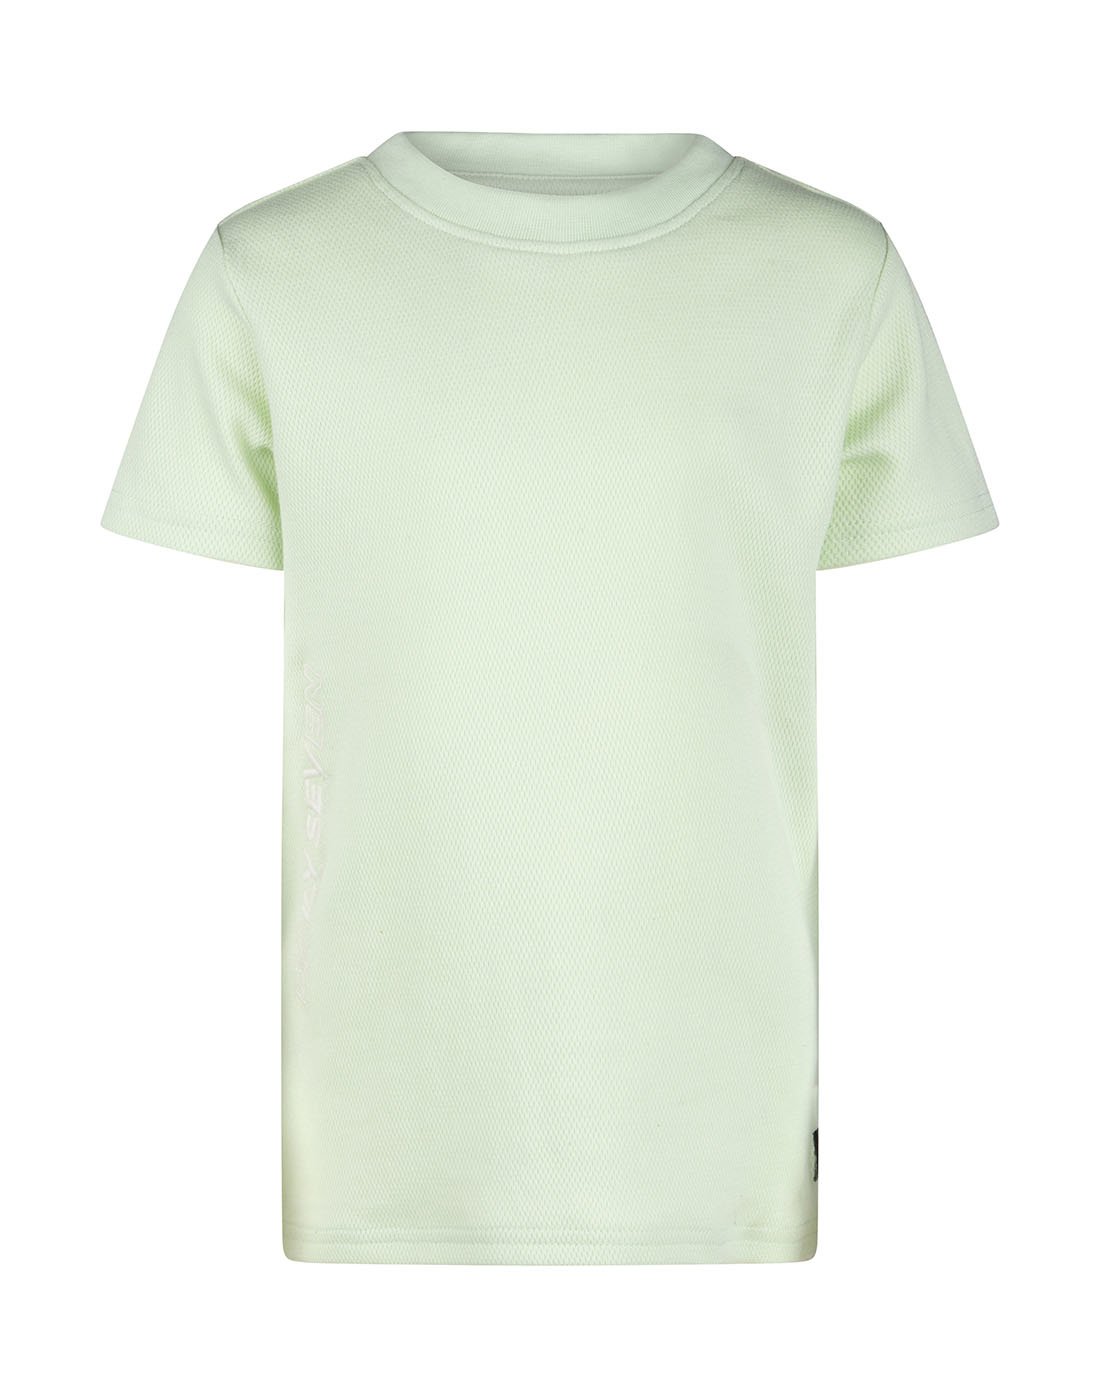 Daily7 Jongens t-shirt pique - Spring groen